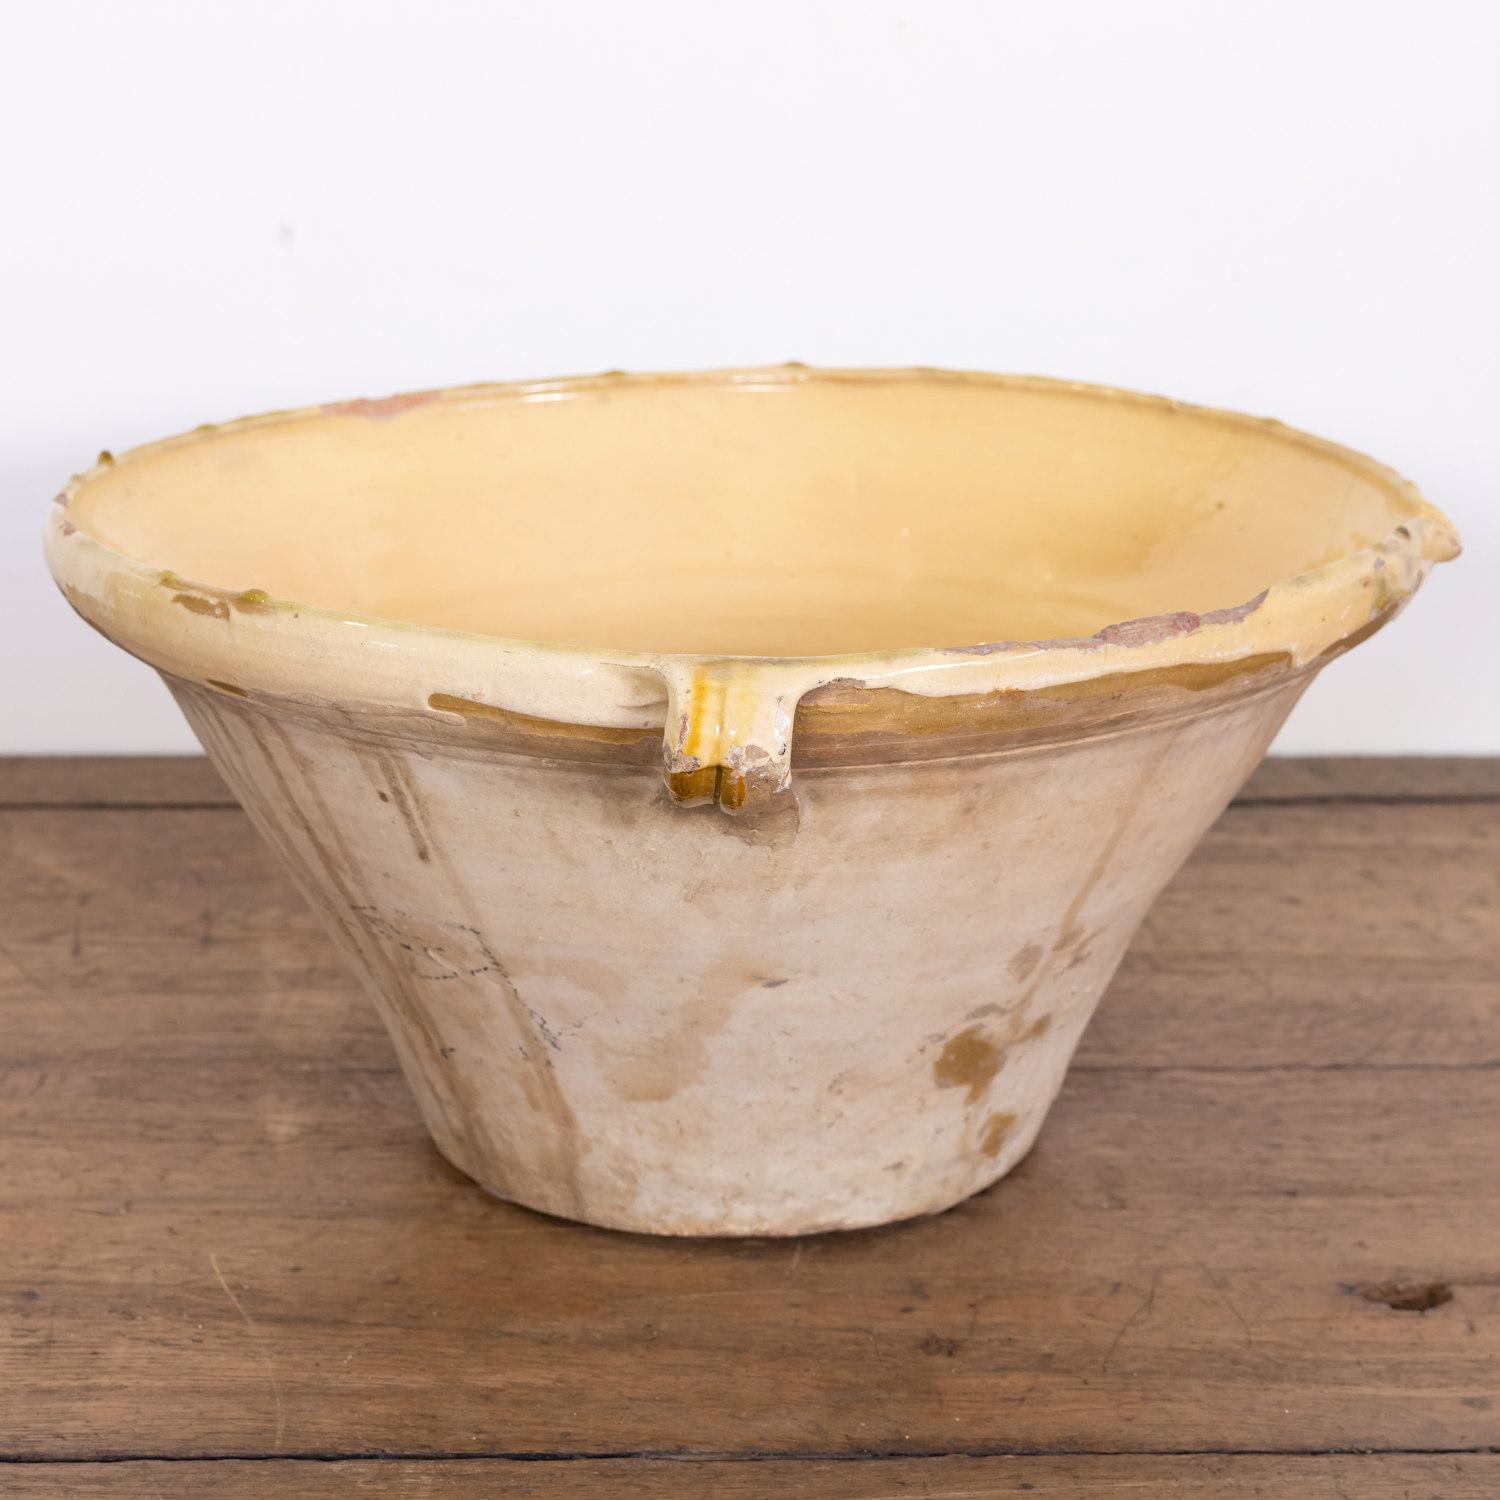 Glazed 19th Century French Terracotta Tian Bowl with Honey Yellow Glaze